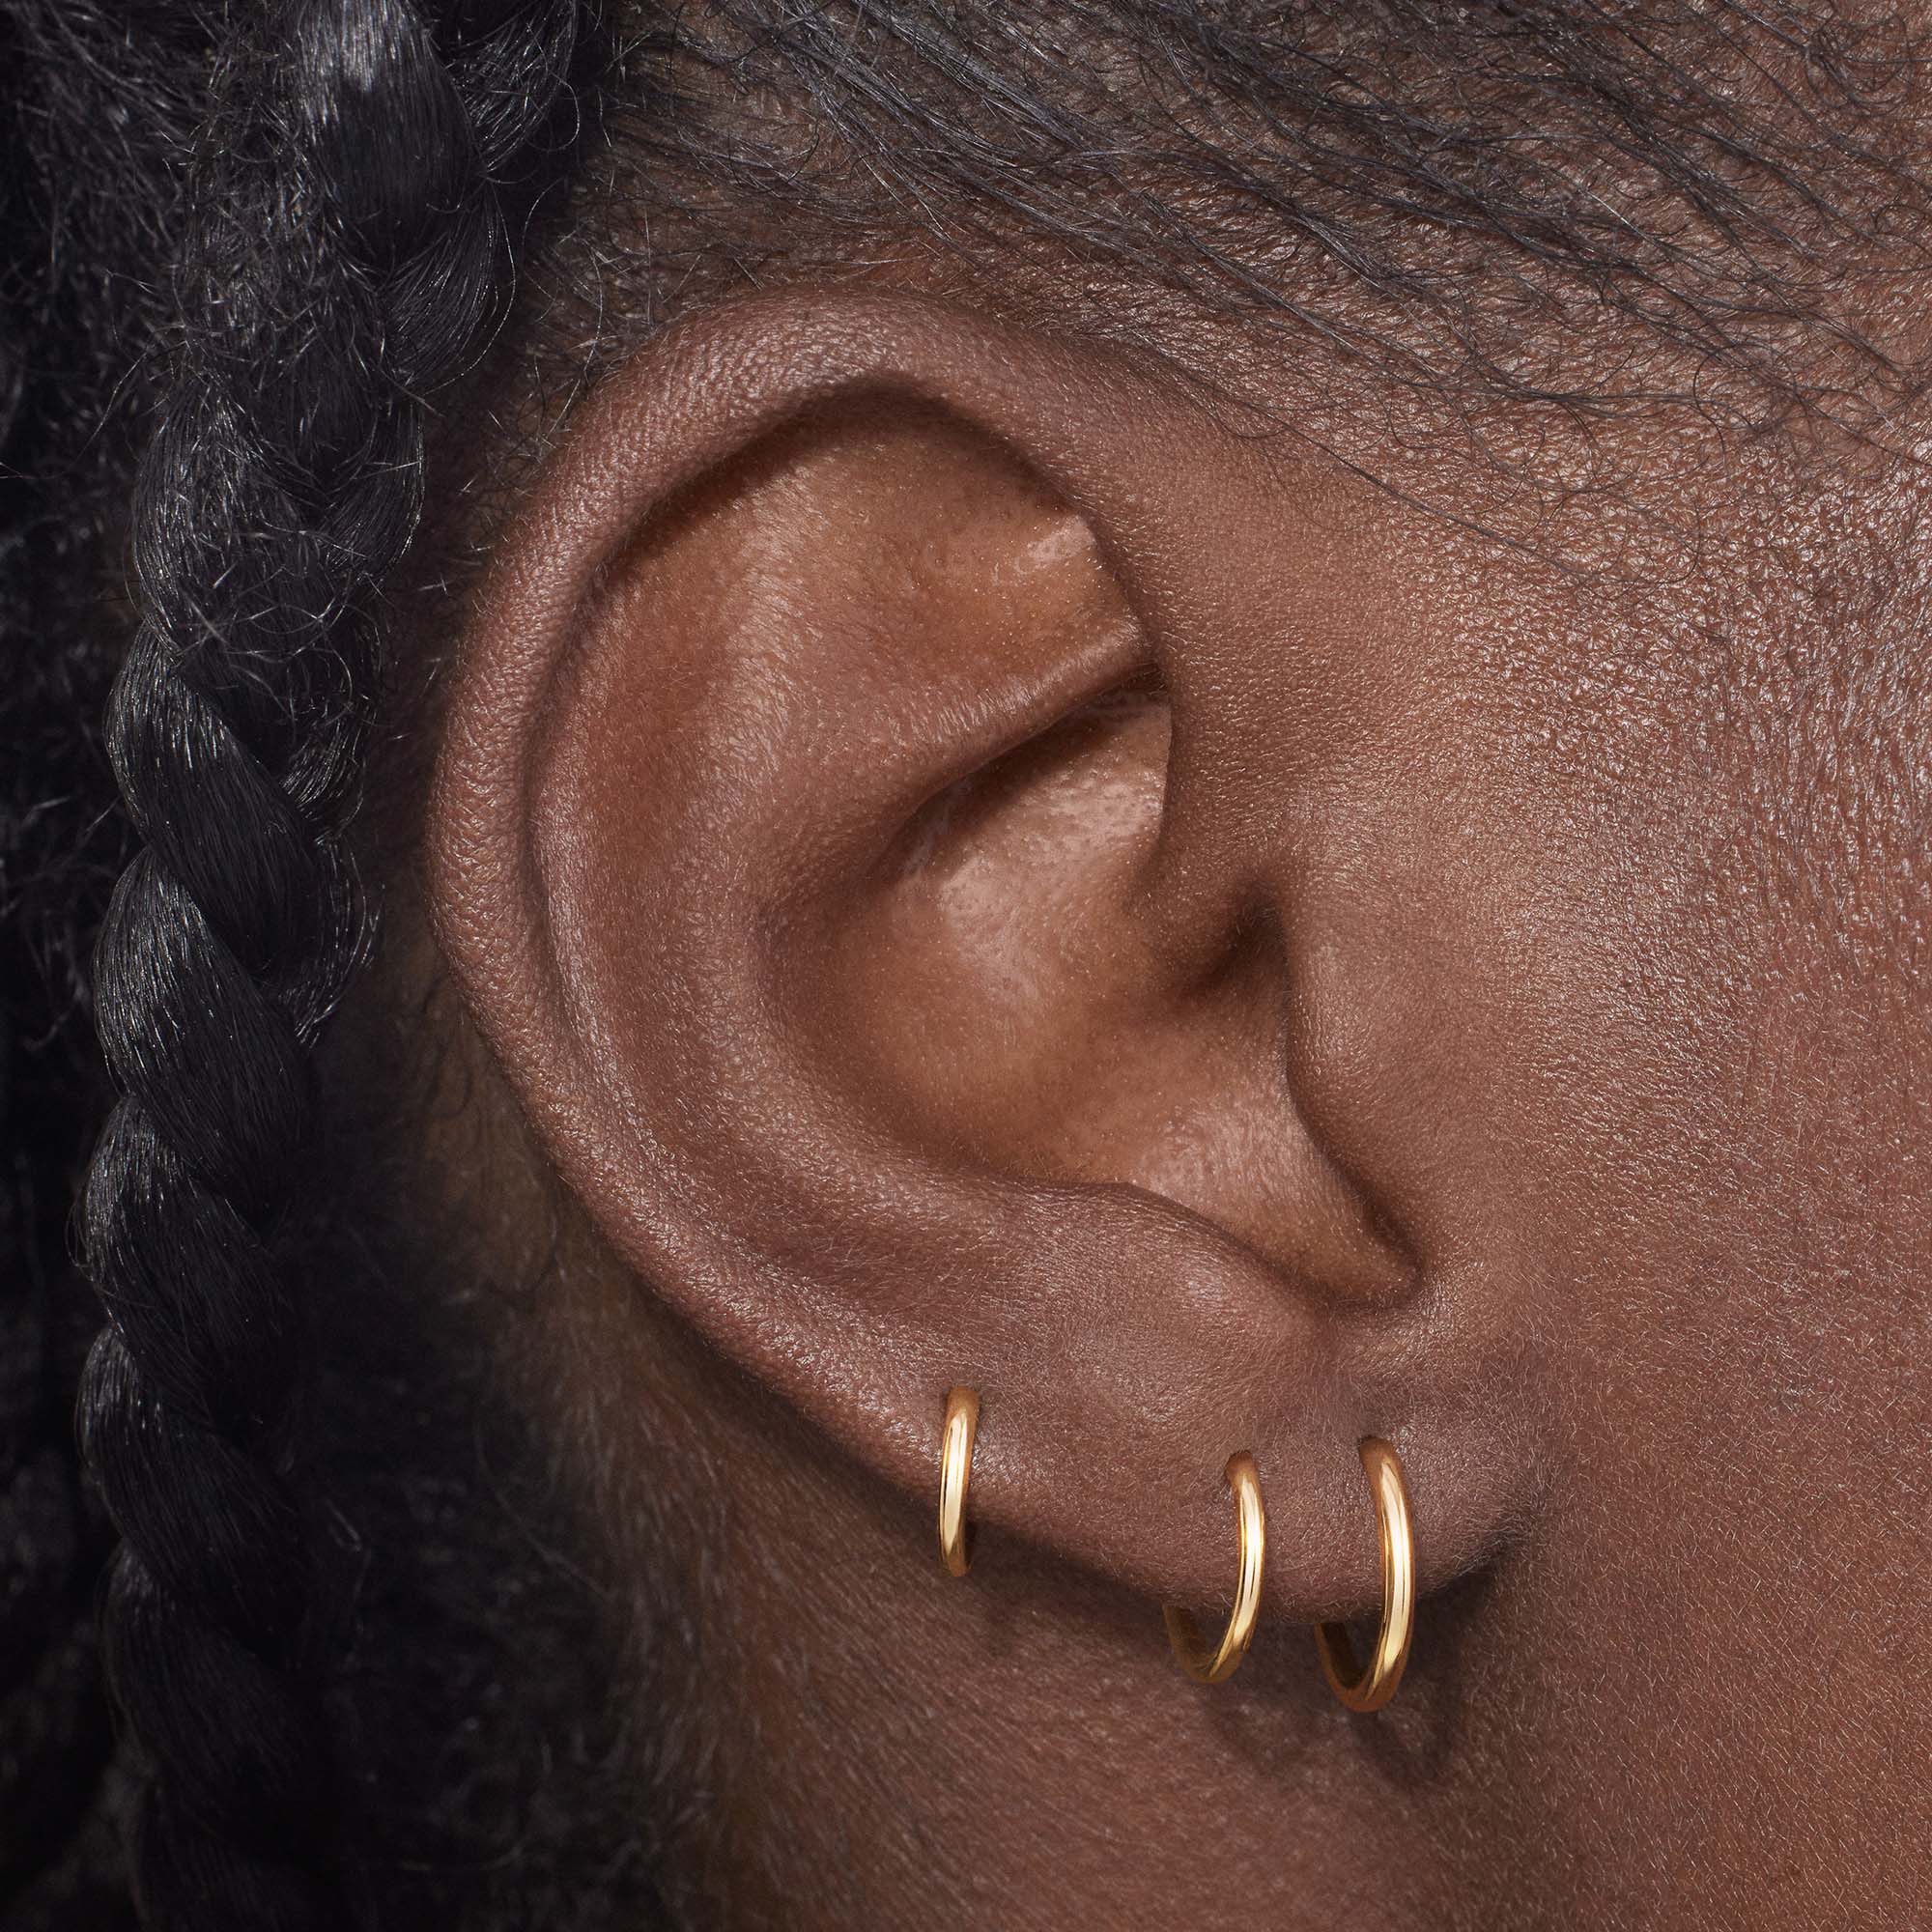 Endless Hoop 12mm Hypoallergenic Earrings | Rowan